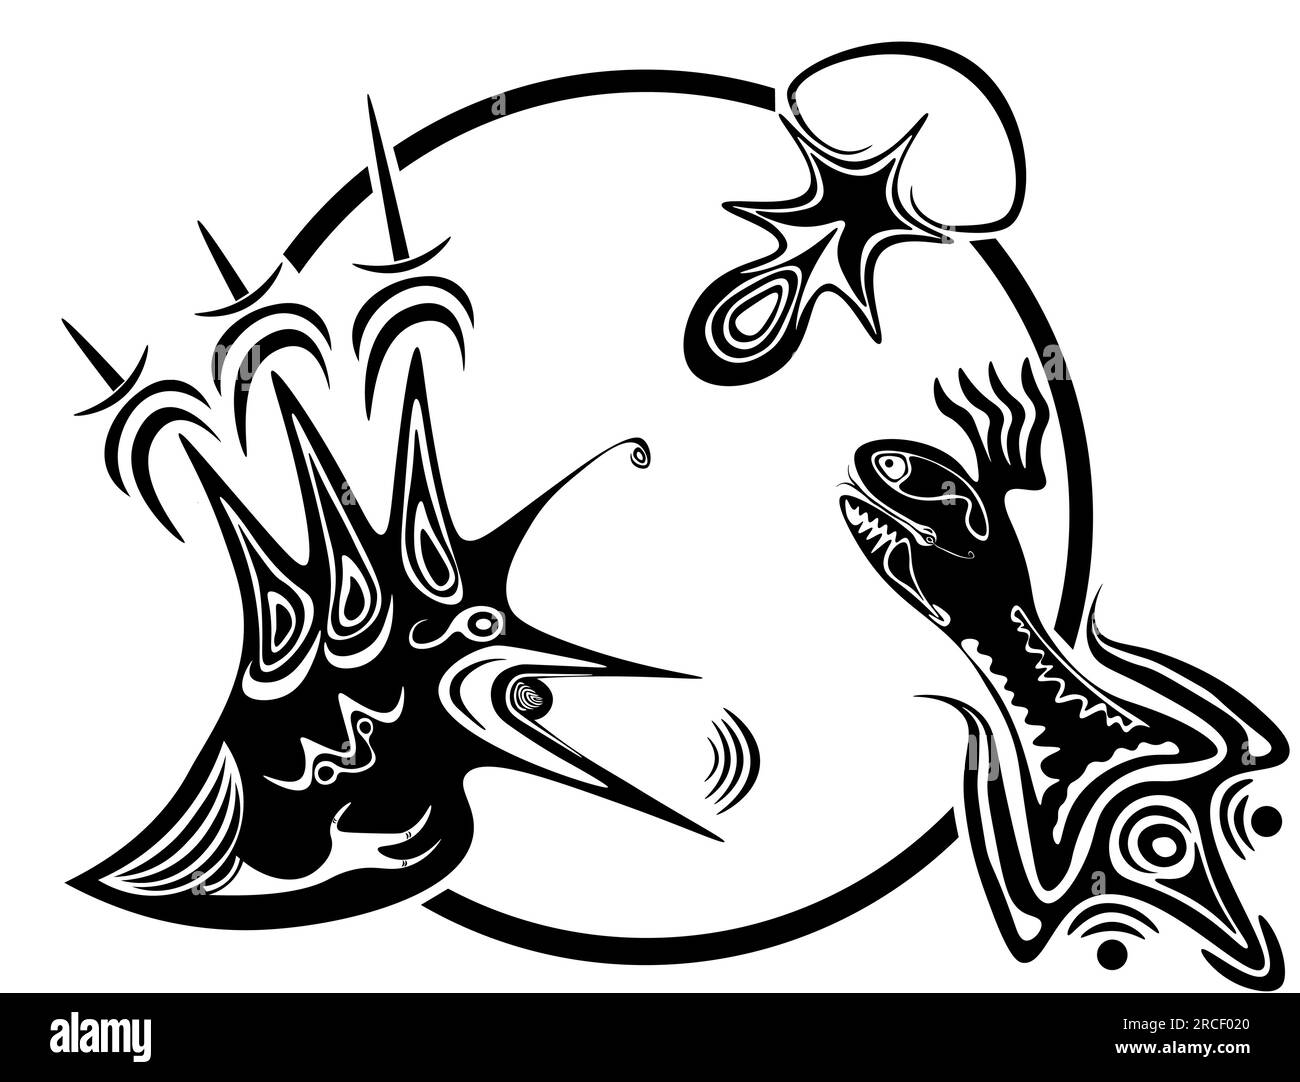 Cette illustration vectorielle abstraite en noir et blanc présente trois figures reliées dans un cercle : un oiseau avec des traits pointus et un pied semblable à un humain Illustration de Vecteur